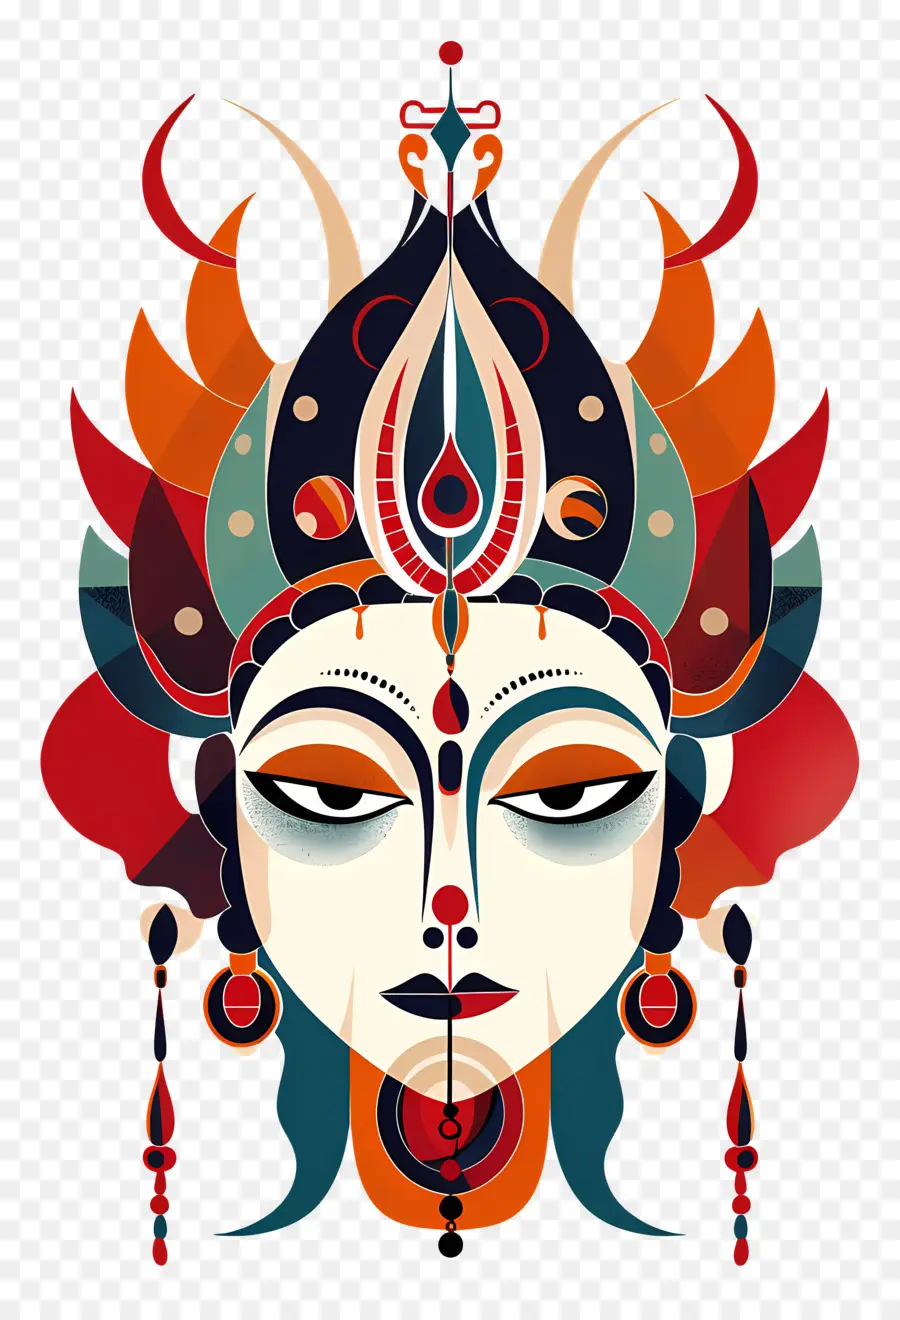 Maa Chandraghanta Goddess Hindu Ornate Chiesa intricati Dettagli Occhi in bianco e nero - Immagine dettagliata della faccia della dea indù